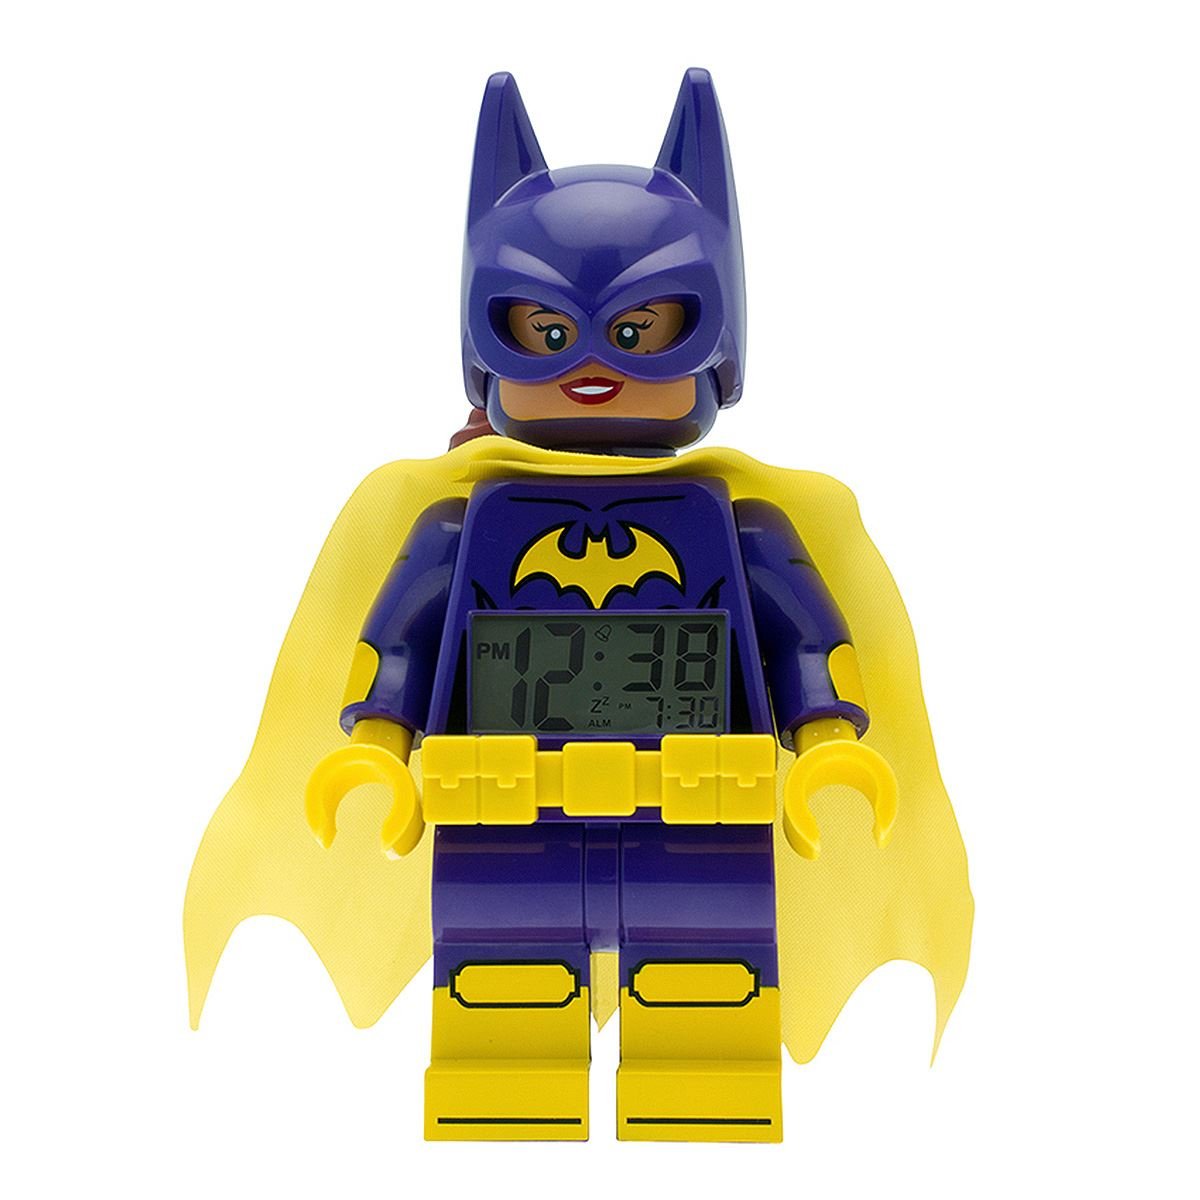 Despertador Lego 9009334 Batgirl